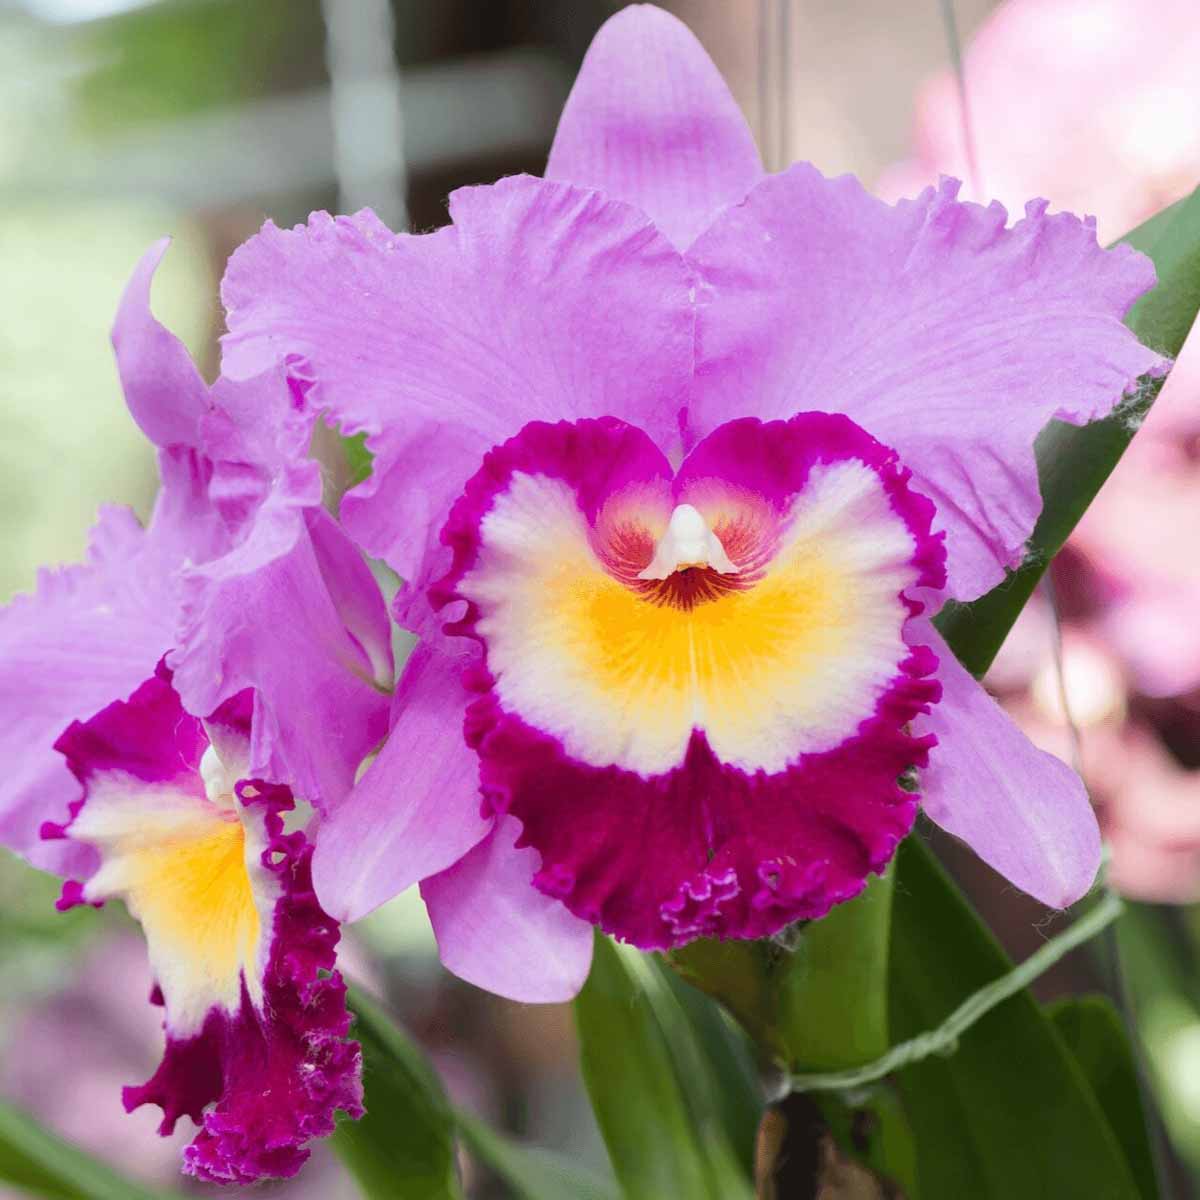 La star delle orchidee si chiama Cattleya